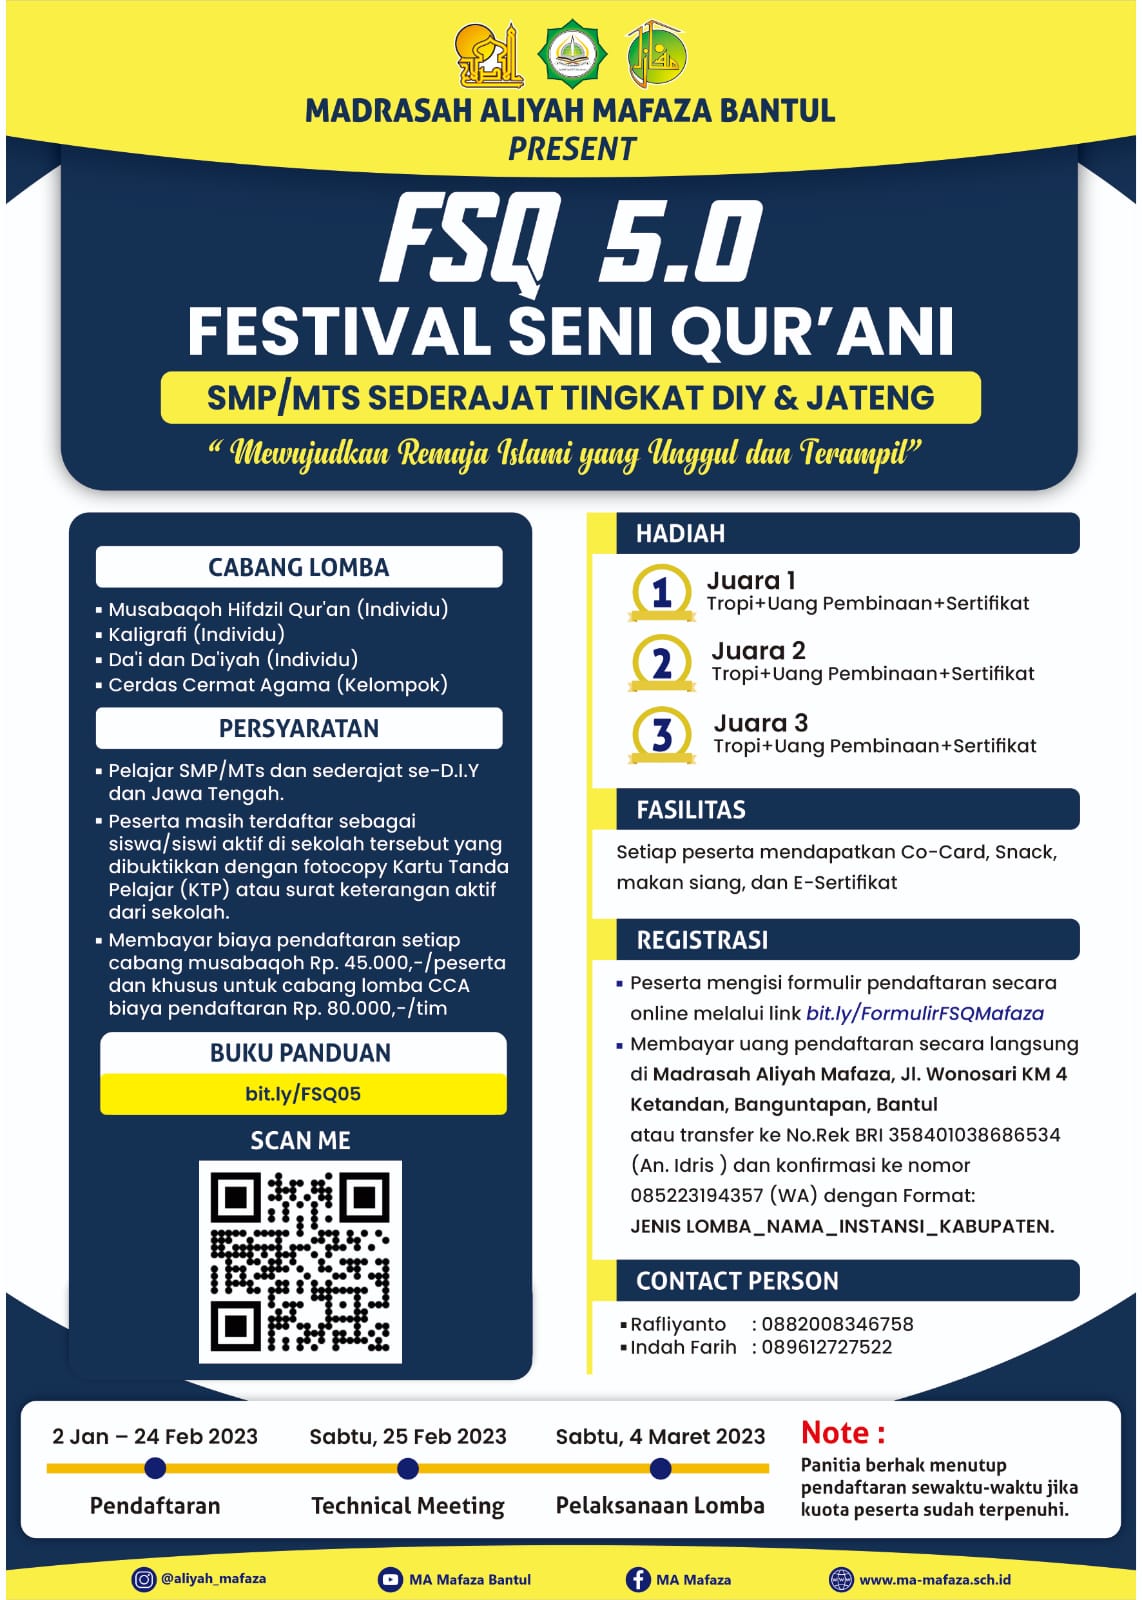 Festival Seni Qurani MA Mafaza Bantul Yogyakarta #1